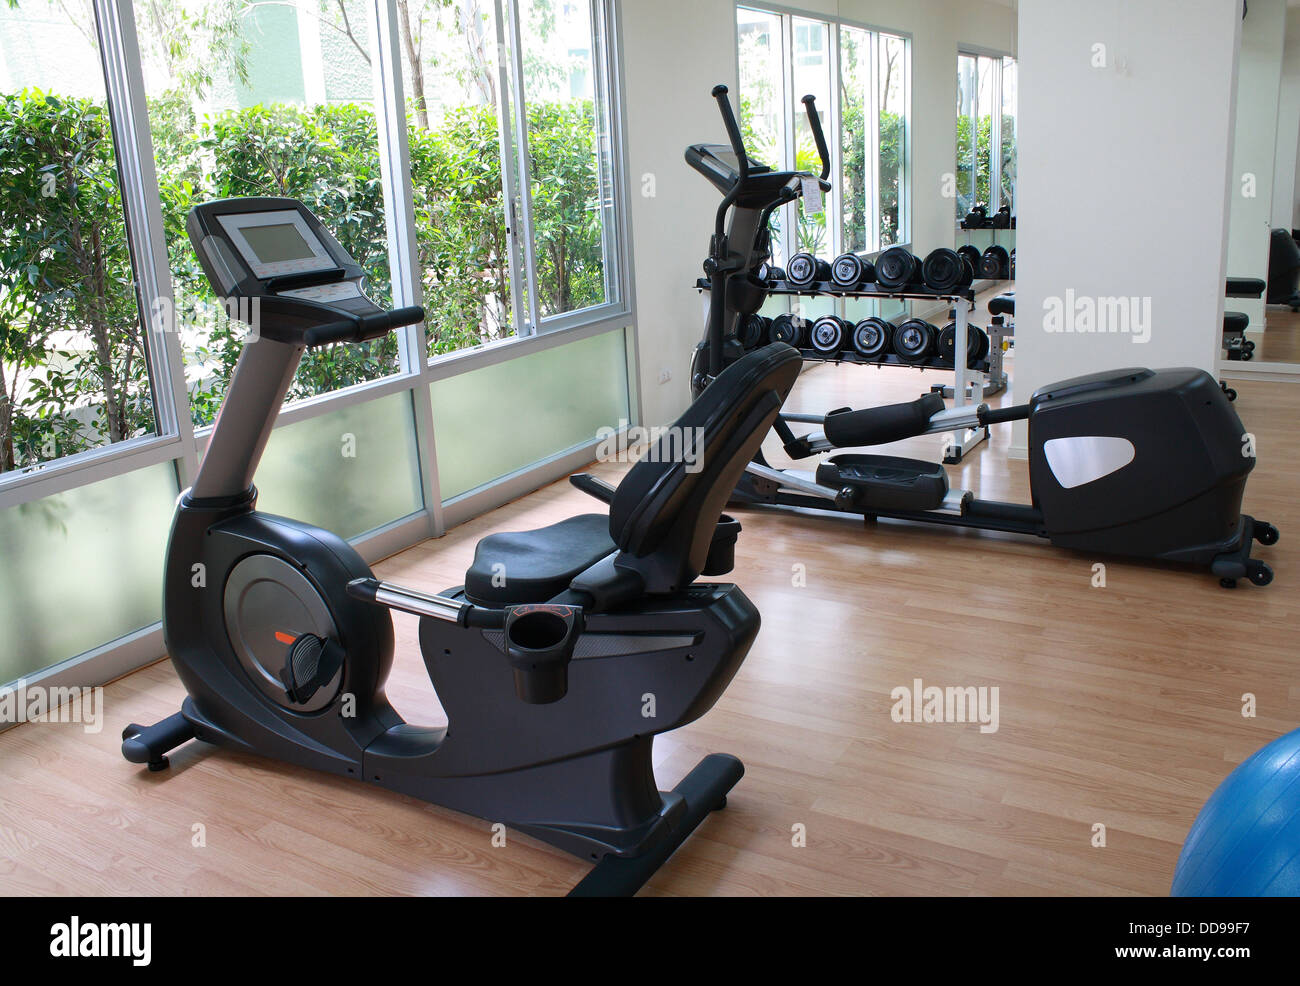 Equipos en la sala de fitness incluyen la cinta de correr, bicicleta estática, pesa y bola Foto de stock